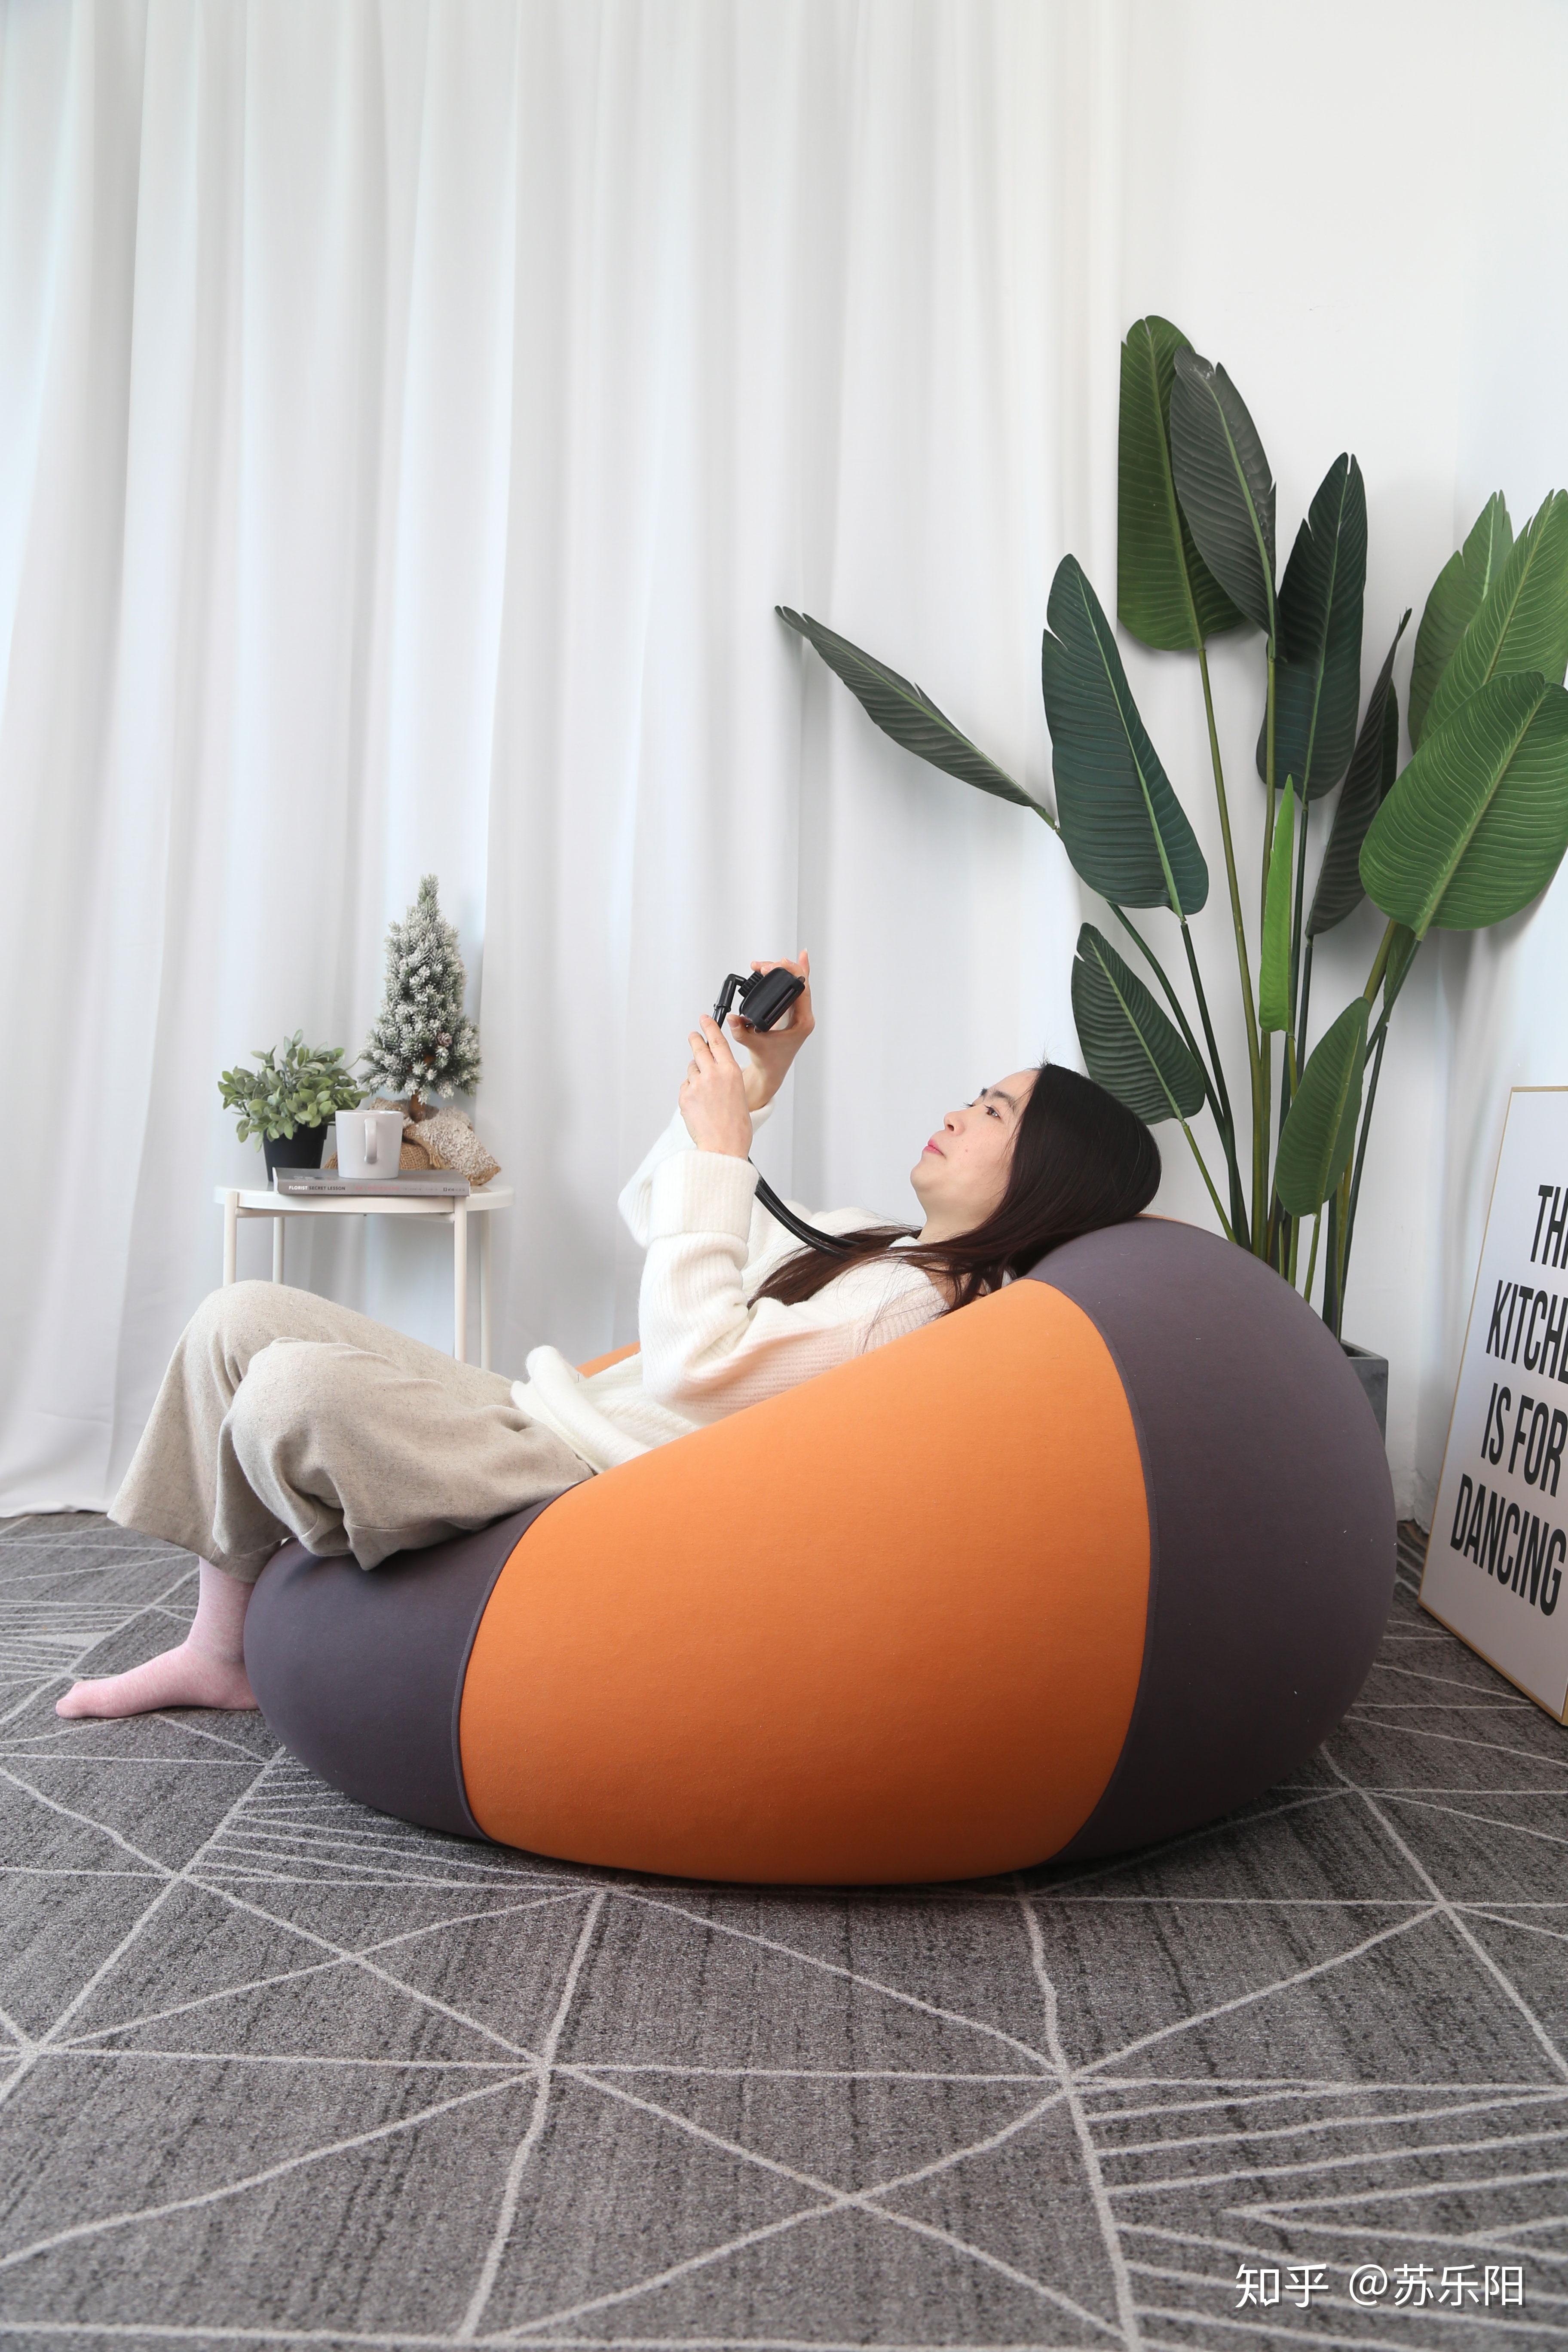 请问是豆袋沙发舒服还是那种两片式折叠的懒人沙发舒服? 